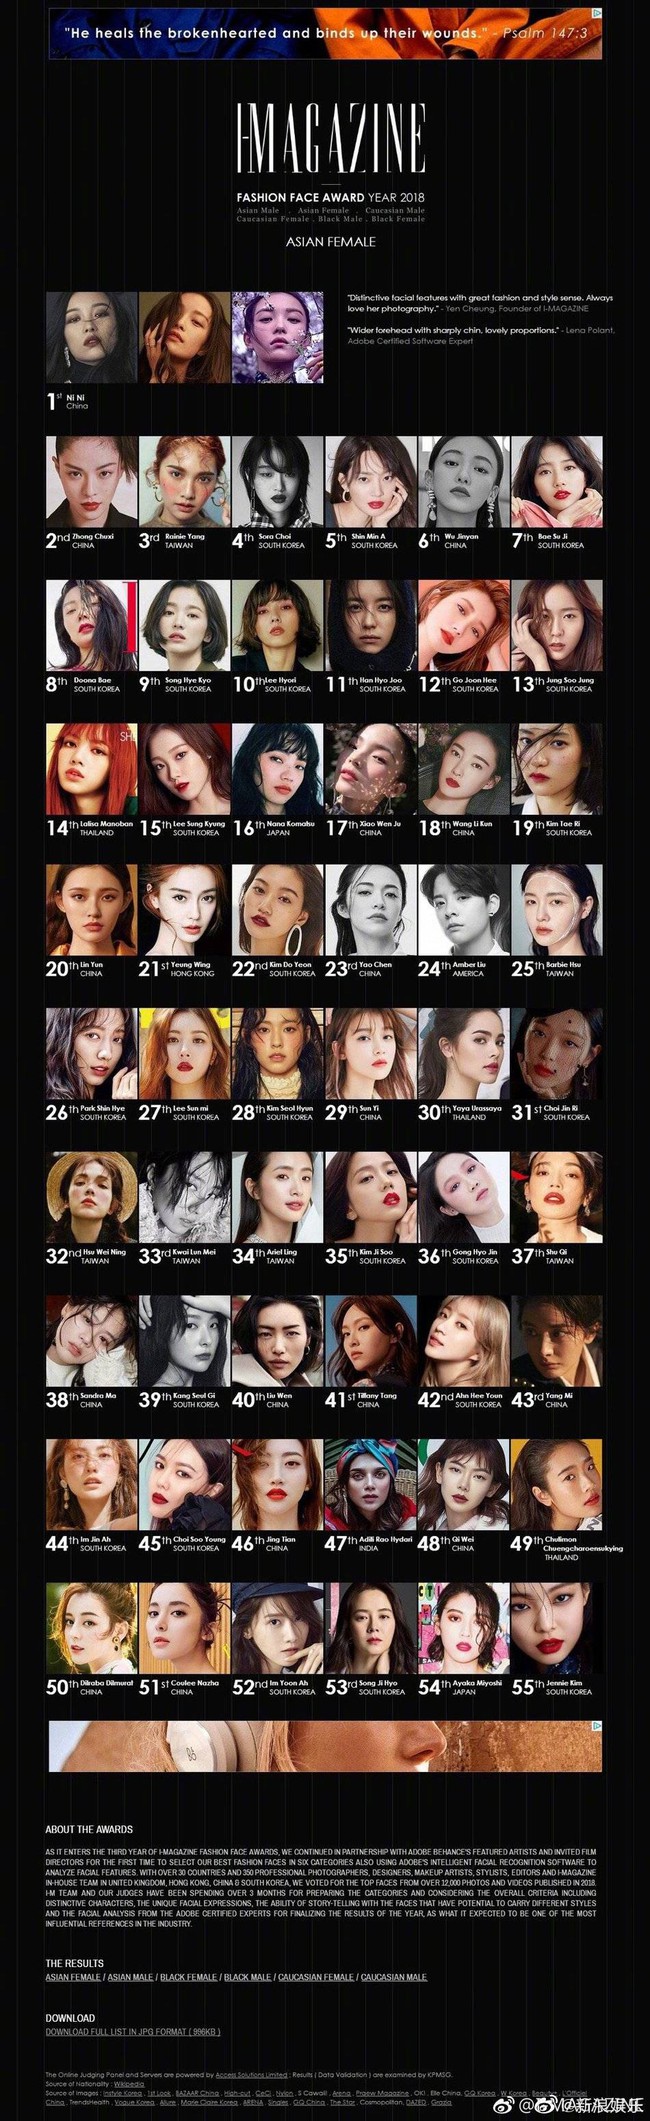 Song Hye Kyo đứng thứ 9 trong danh sách gương mặt thời trang nhất châu Á, nhưng người vượt cô để lên vị trí thứ 6 mới bất ngờ  - Ảnh 1.